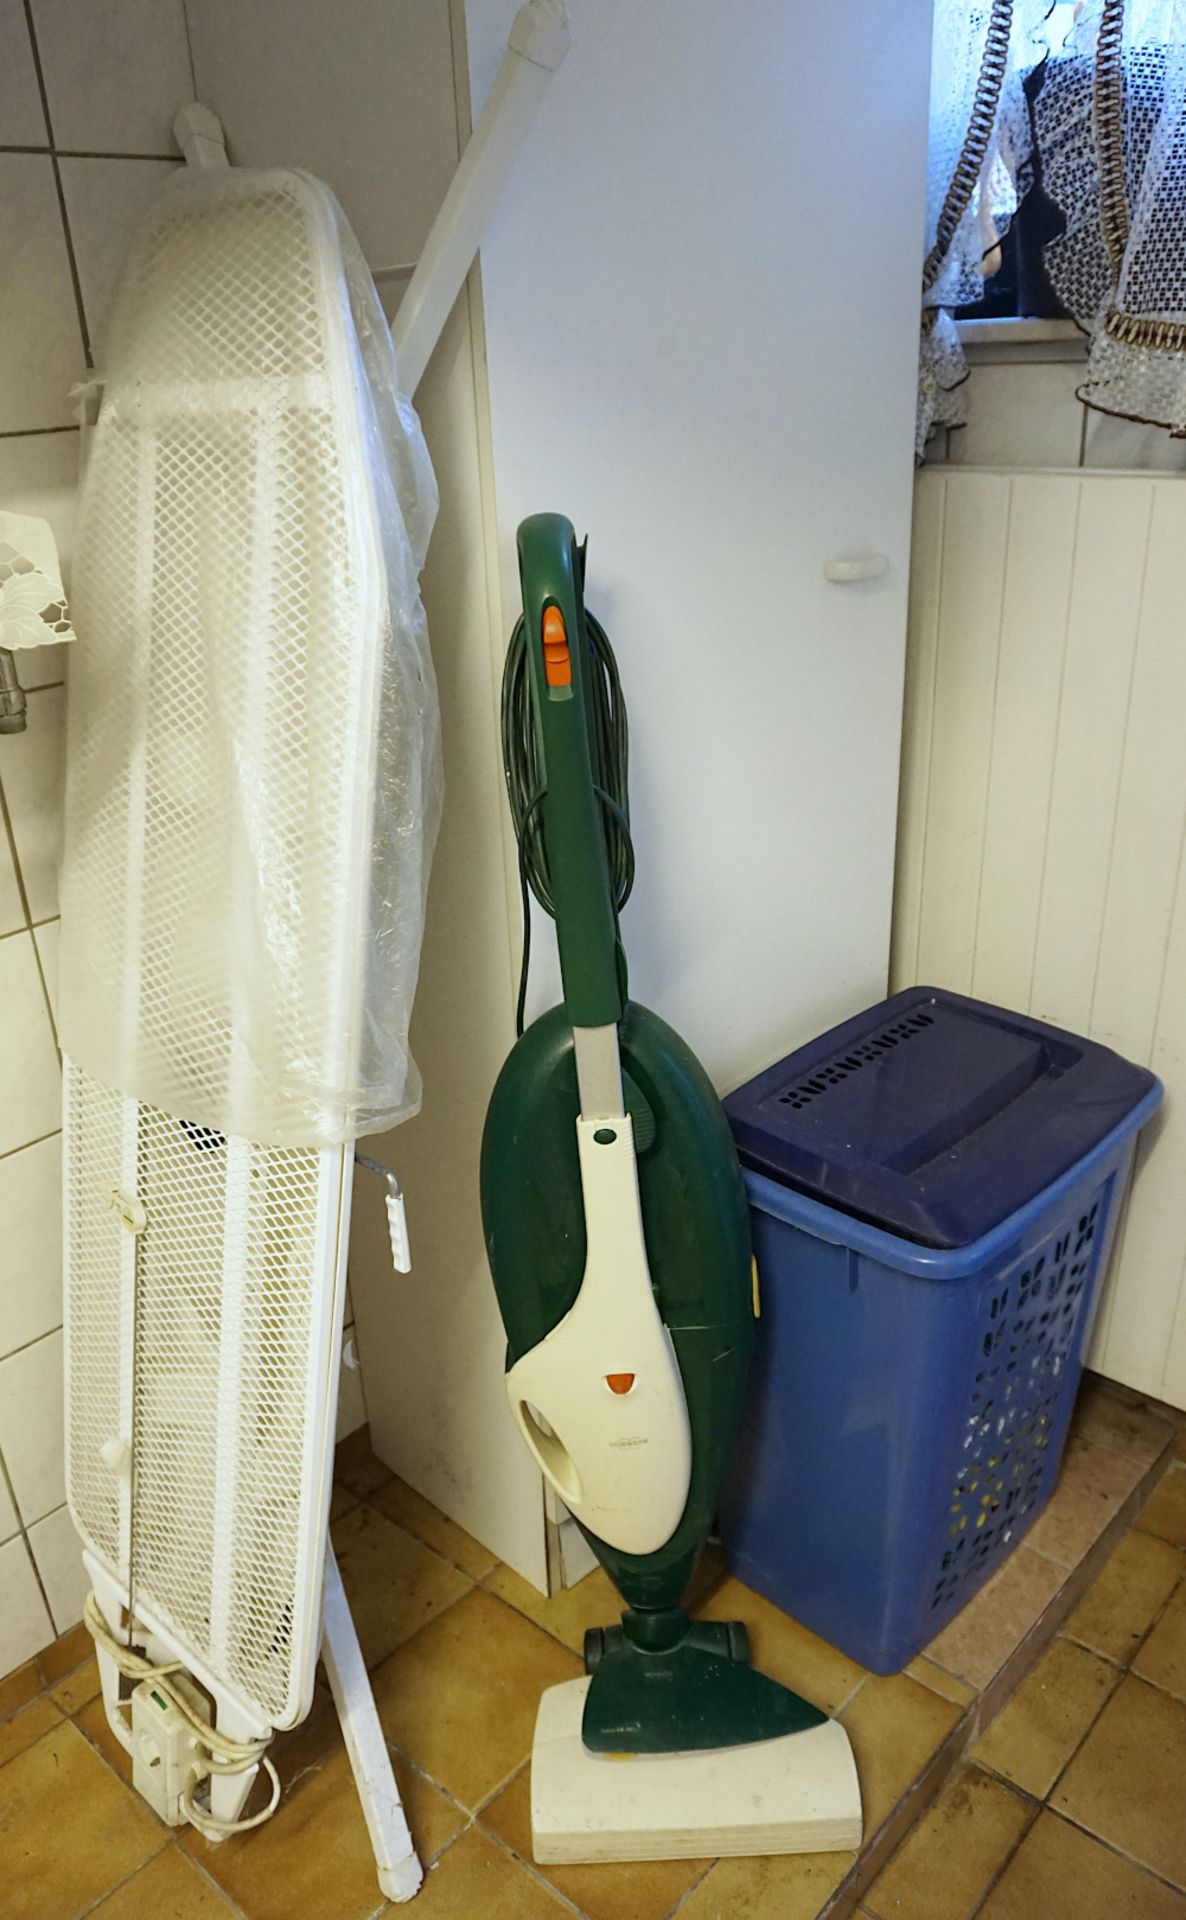 2 Kellerräume: Spülmaschine, Waschmaschine, Kühltruhe, Trockner, Bügelmaschine, Hausrat, Gläser - Bild 4 aus 7